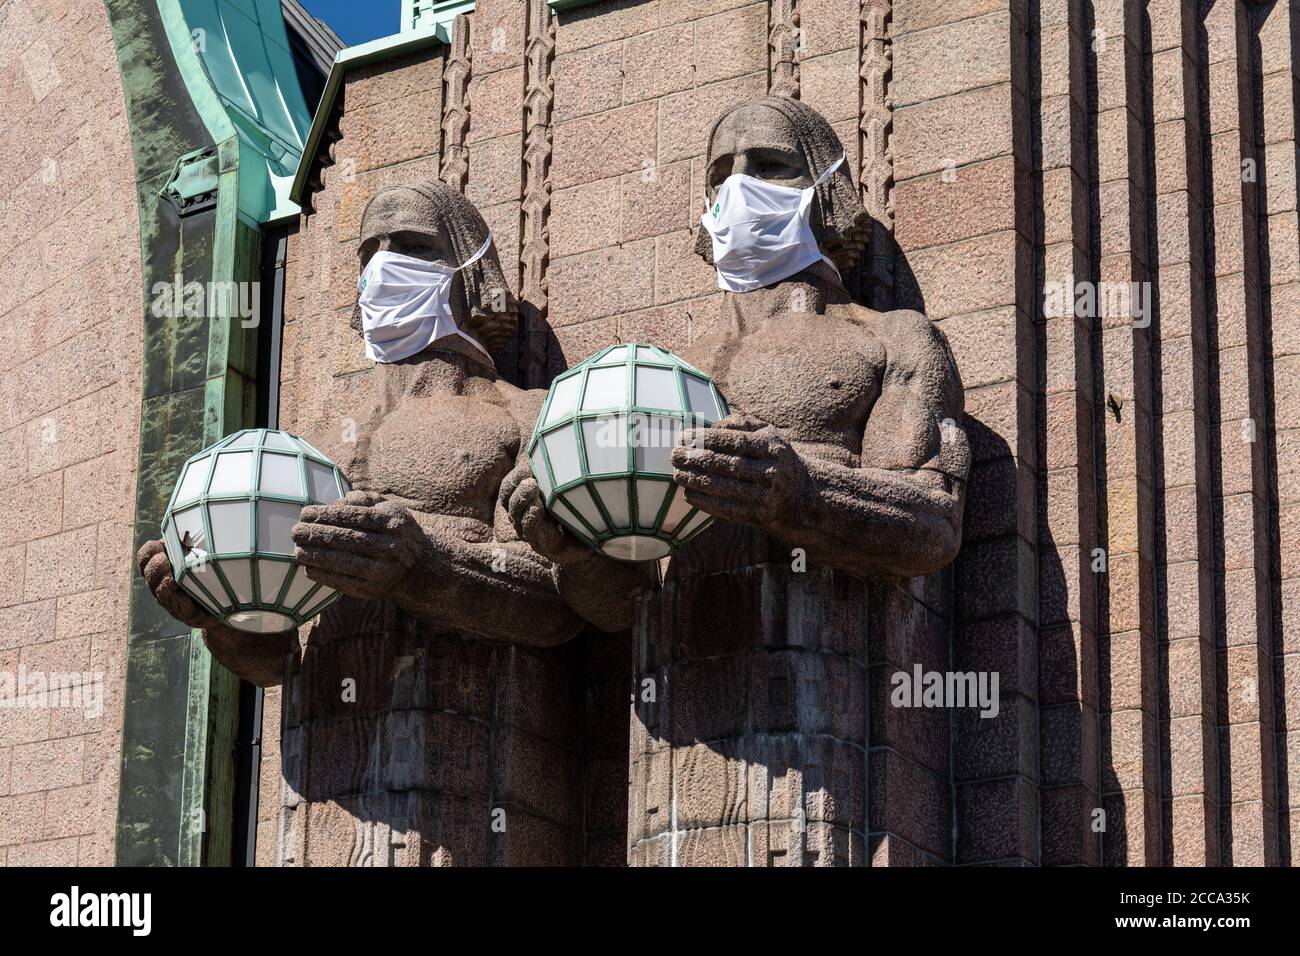 Lampada sferica che contiene statue che indossano maschere per il viso presso l'ingresso principale della stazione ferroviaria centrale durante l'epidemia di coronavirus a Helsinki, Finlandia Foto Stock